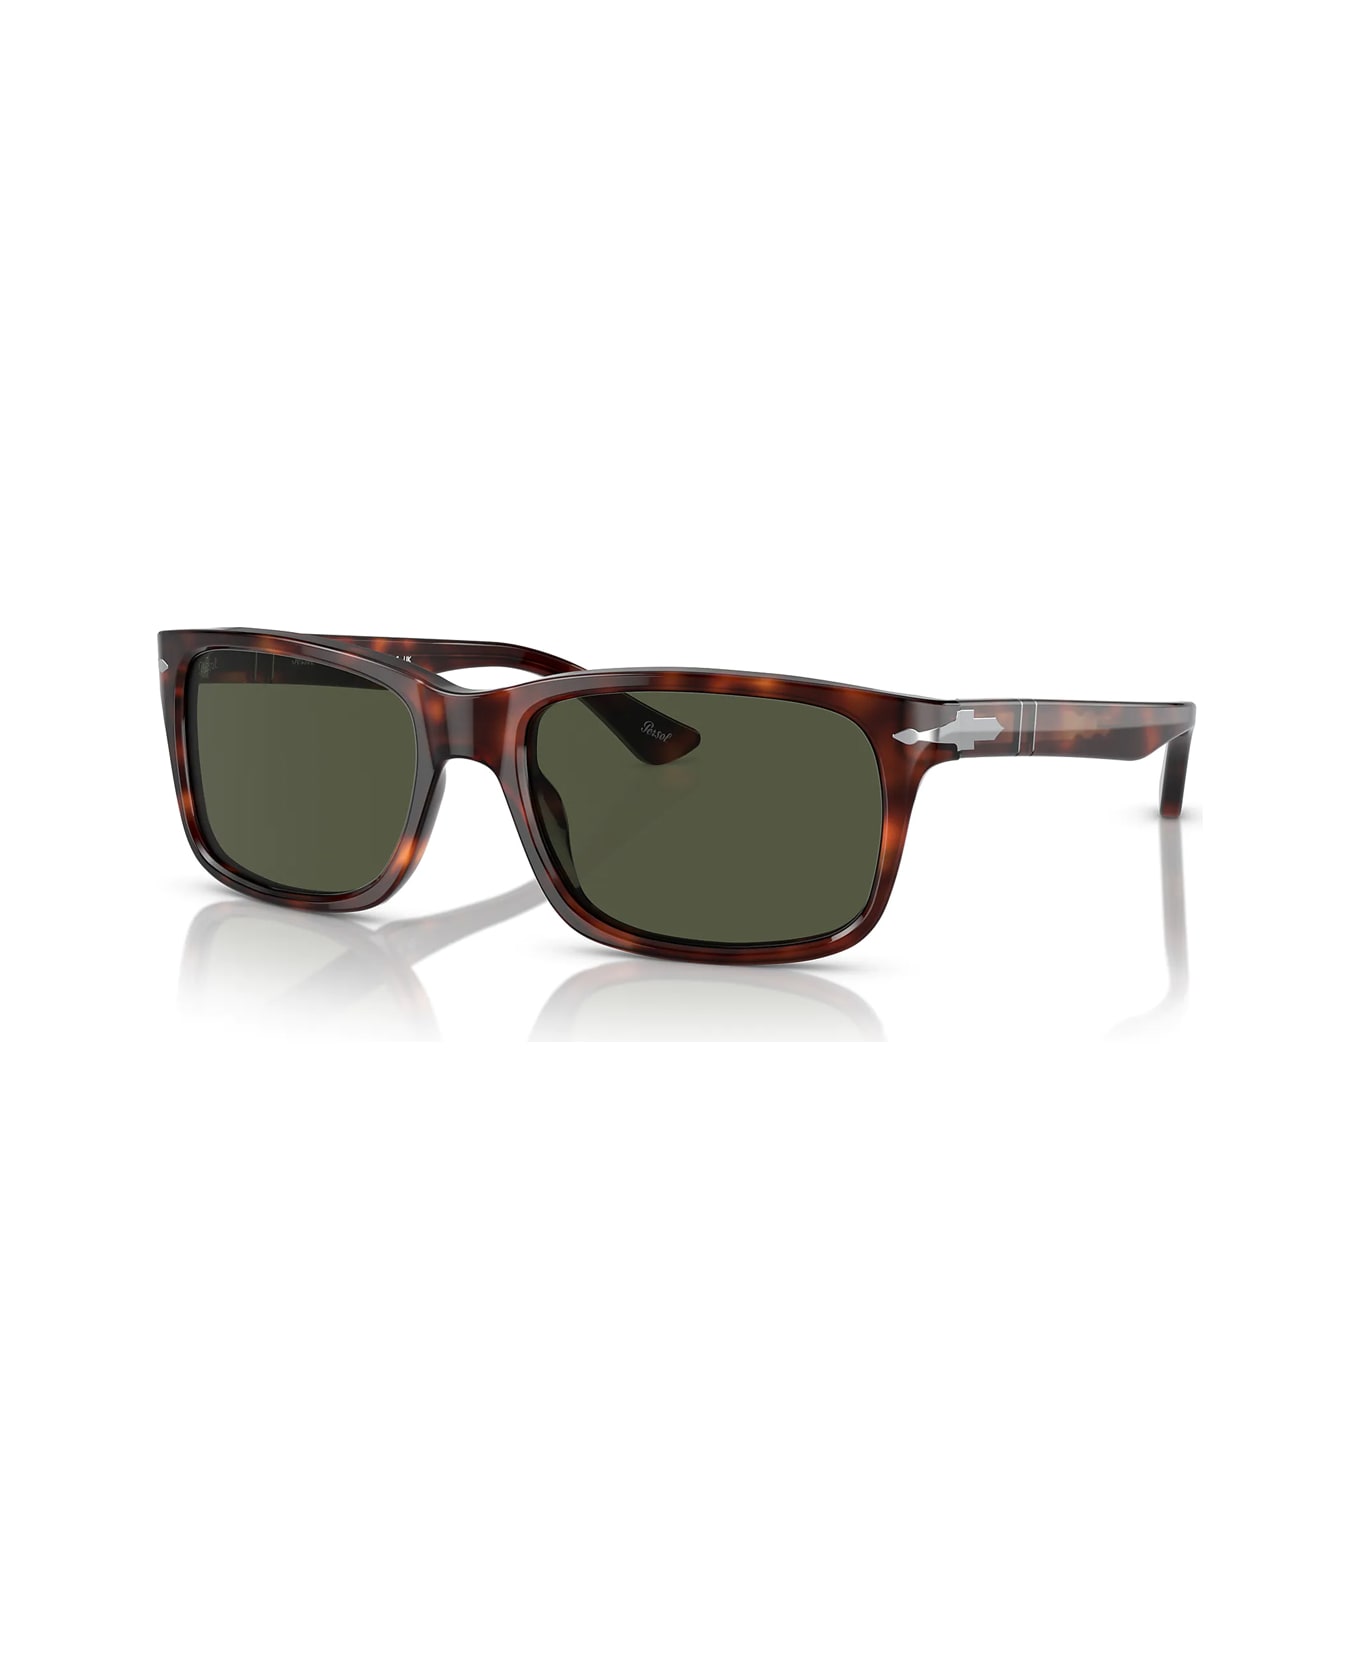 Persol Po3048s 24/31 Sunglasses - Marrone